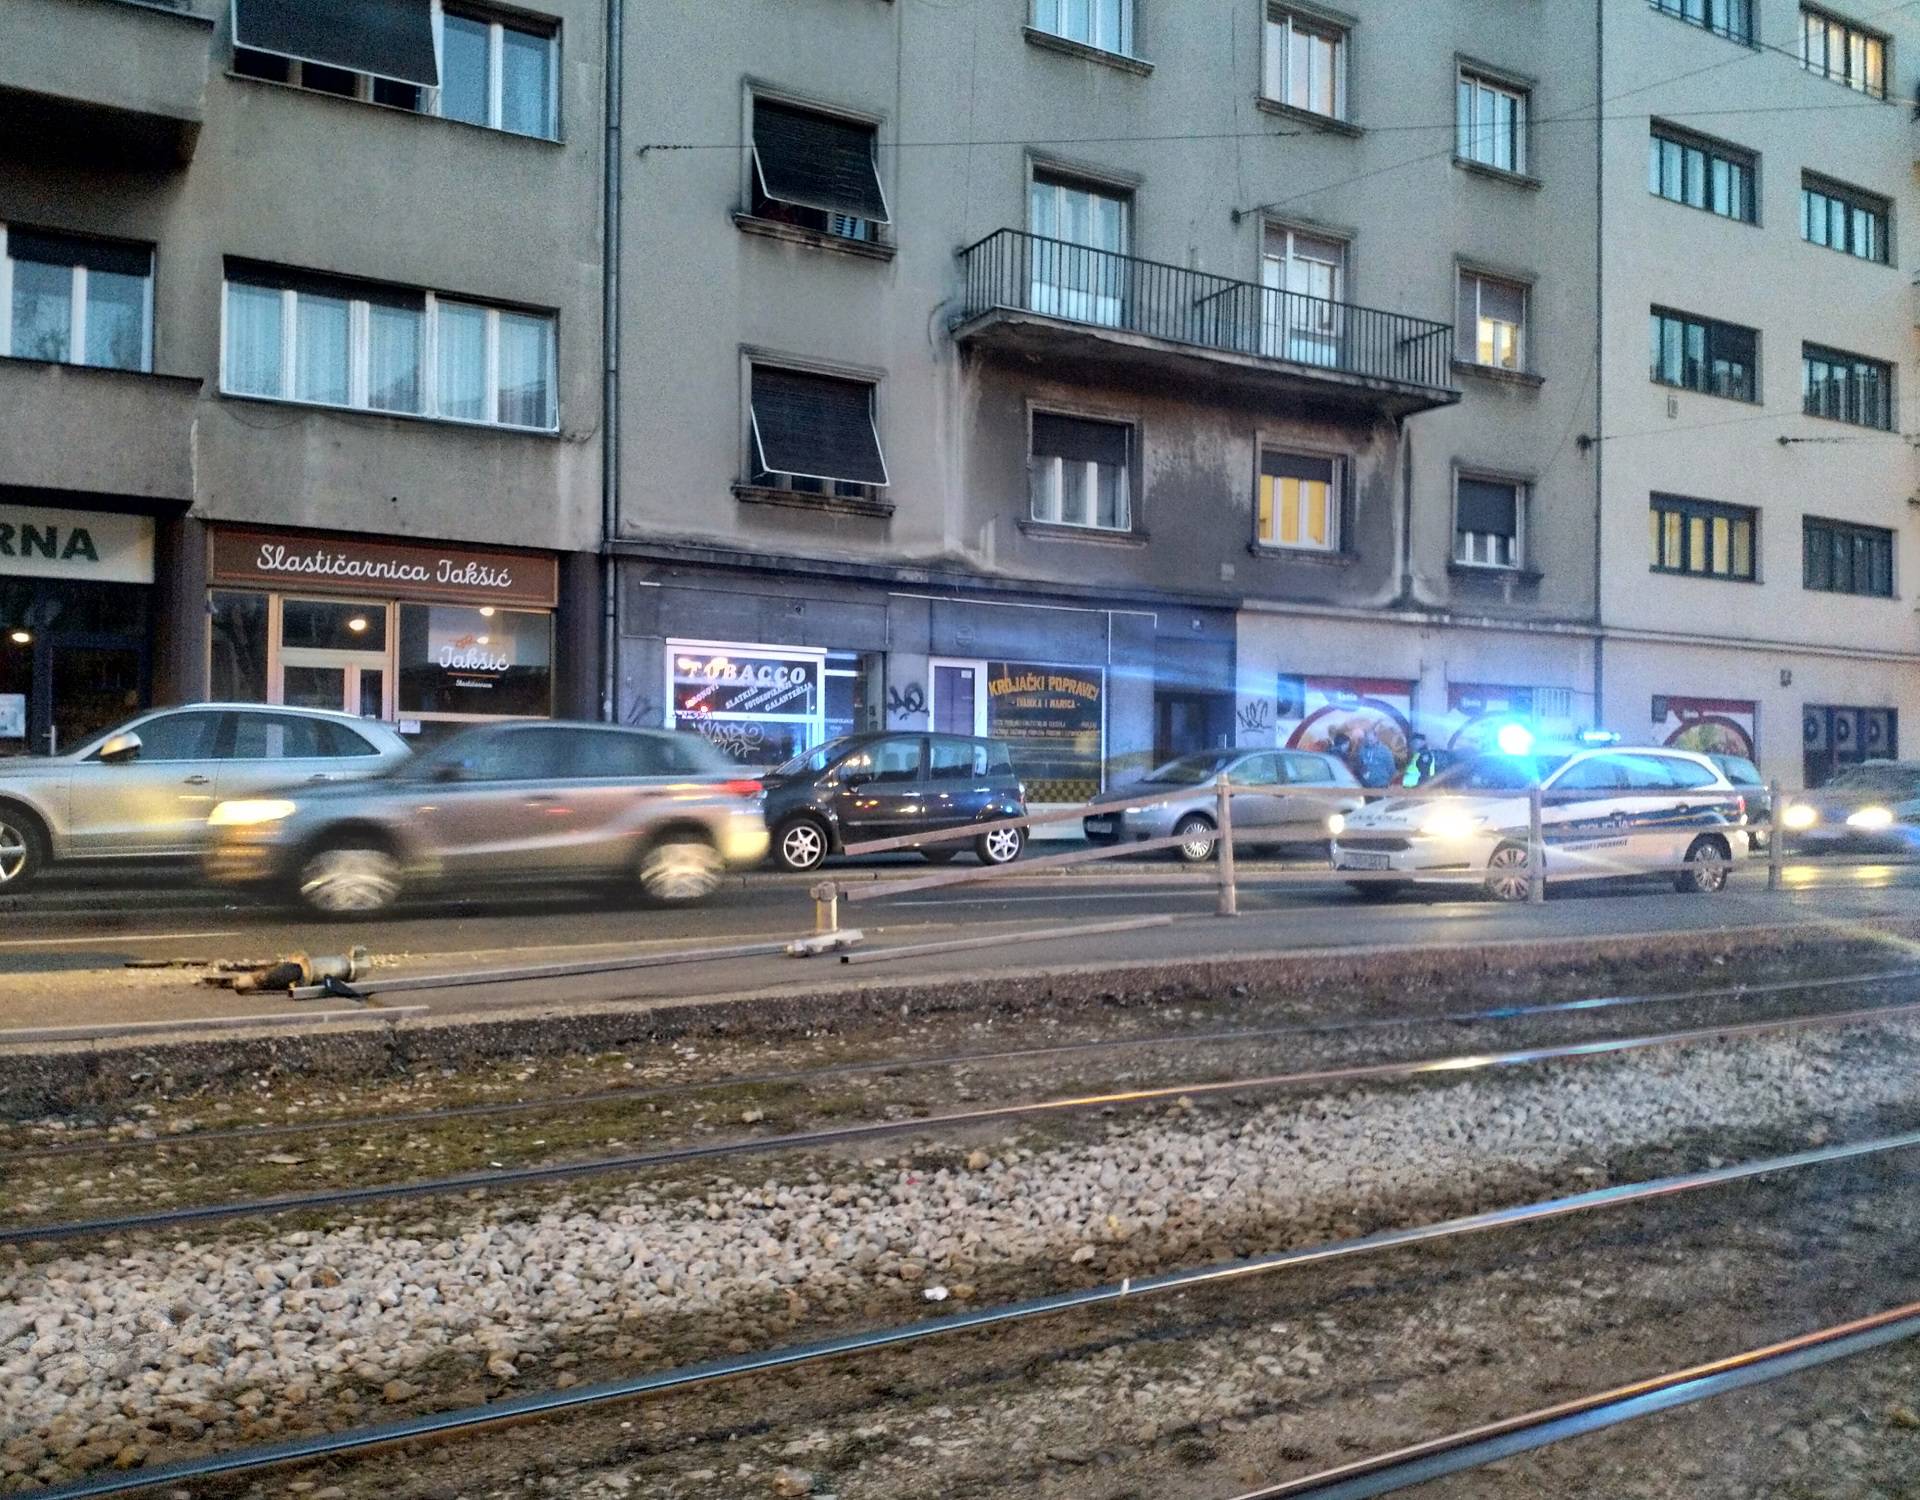 Sudar u Zagrebu: Smart je smrskan, uništili su i stanicu